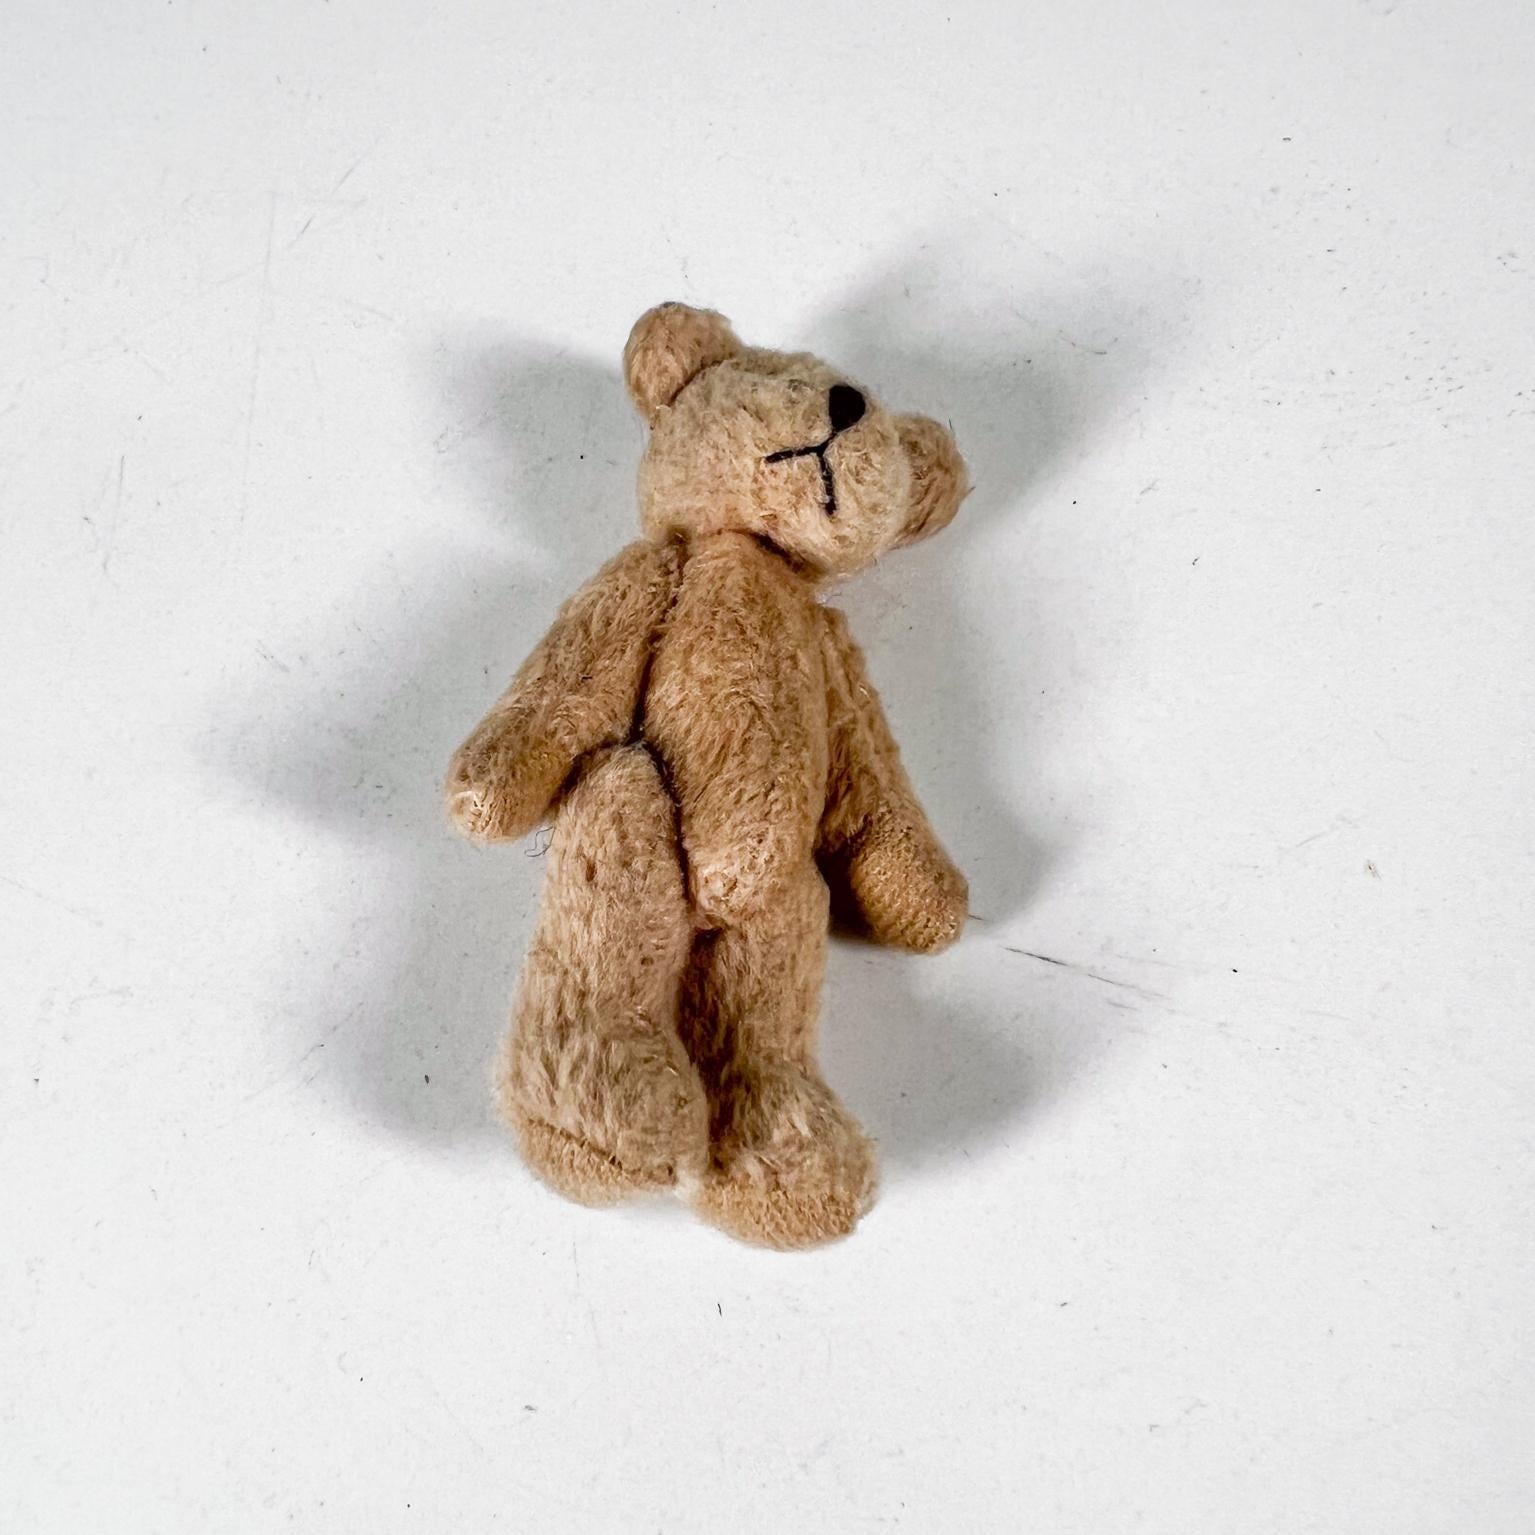 Precious Vintage Tiny Baby Teddybär
gelenkig, weich und knuddelig
3 H x 1,75 B x 0,88 T
Vorgetragener Vintage-Zustand unrestauriert
Überprüfen Sie alle bereitgestellten Bilder.